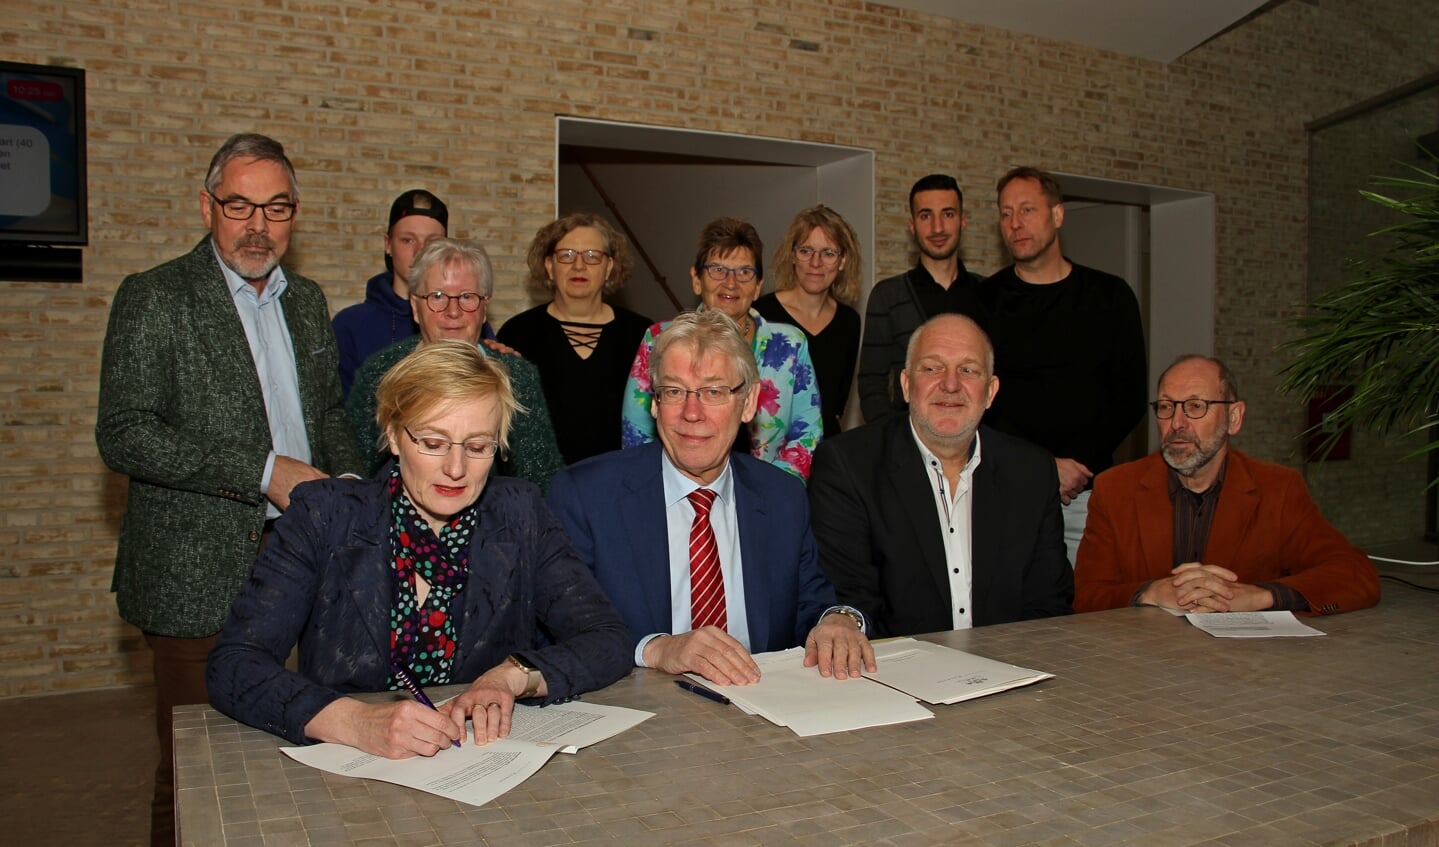 De akte van levering van De Kei in Steenderen wordt ondertekend door burgemeester Marianne Besselink. Foto: Liesbeth Spaansen